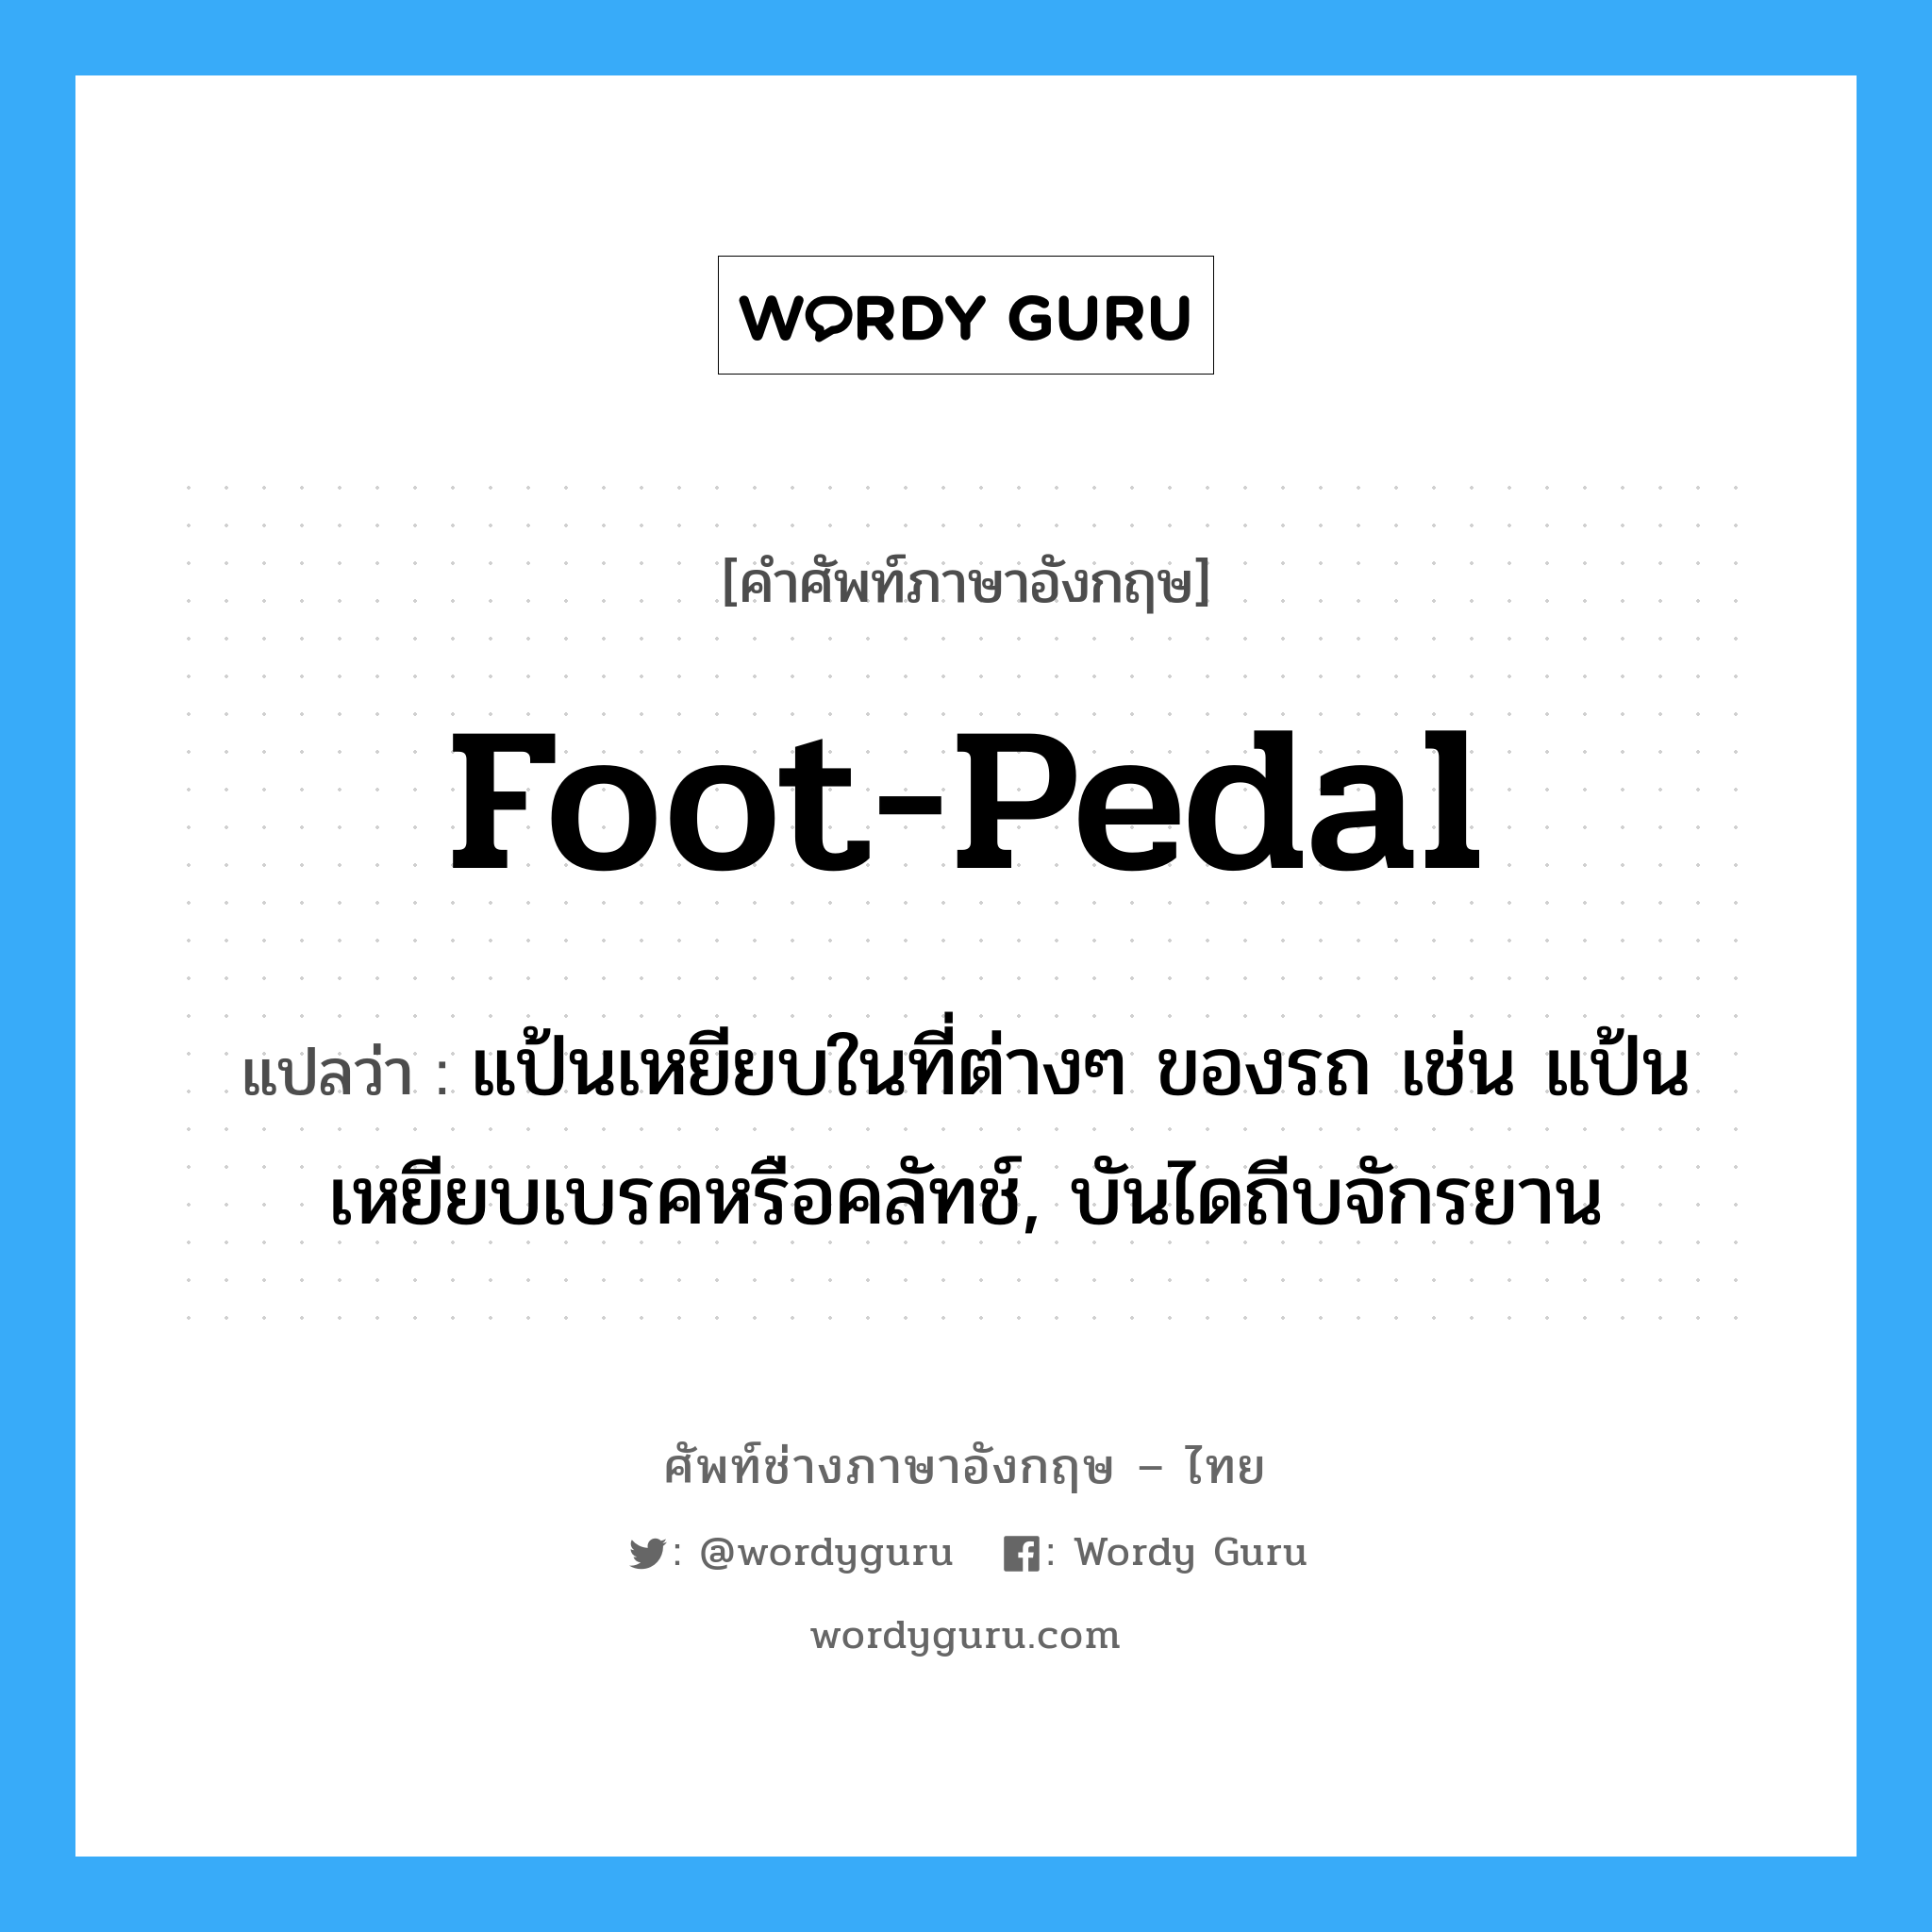 foot-pedal แปลว่า?, คำศัพท์ช่างภาษาอังกฤษ - ไทย foot-pedal คำศัพท์ภาษาอังกฤษ foot-pedal แปลว่า แป้นเหยียบในที่ต่างๆ ของรถ เช่น แป้นเหยียบเบรคหรือคลัทช์, บันไดถีบจักรยาน